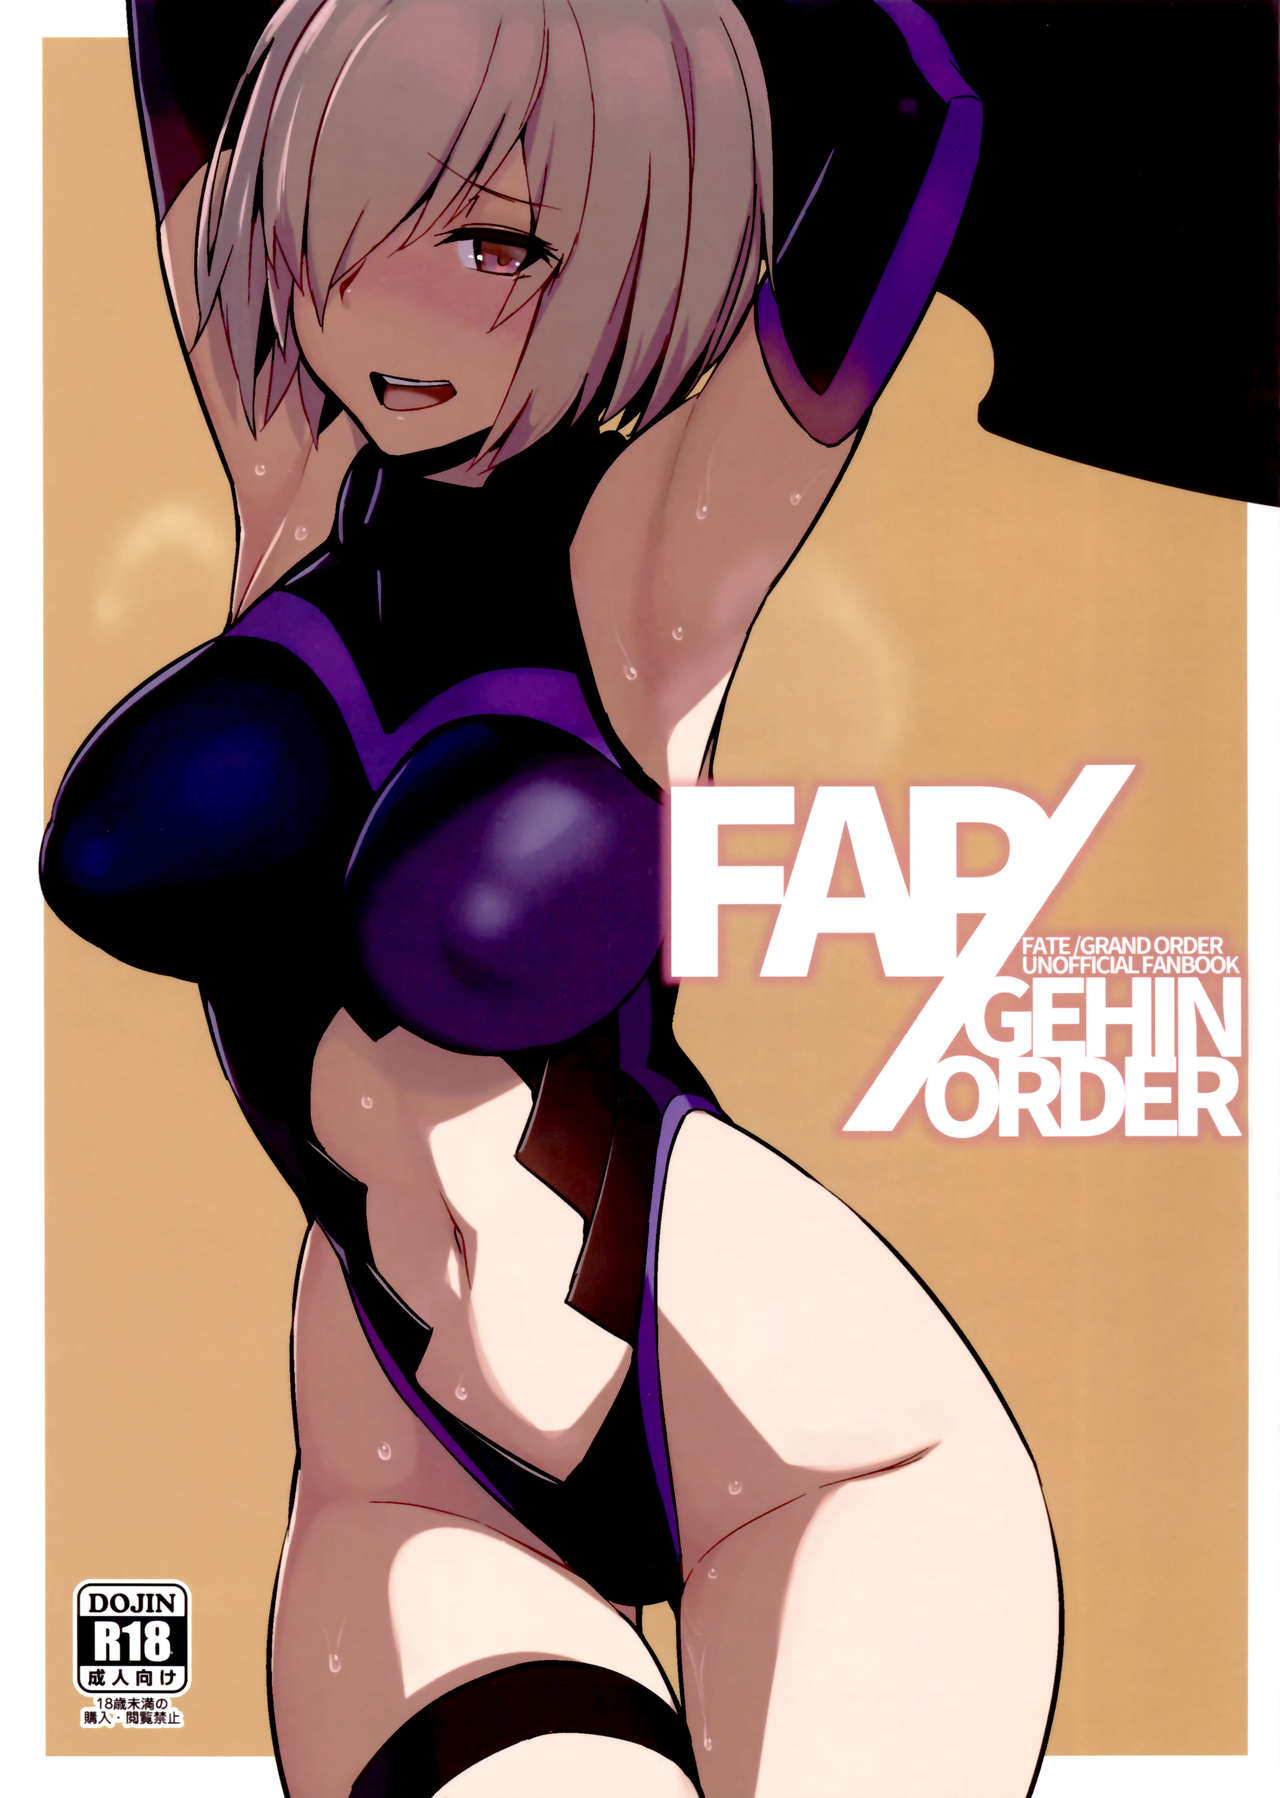 [黑輪] FAPGEHIN ORDER (FateGrand Order) - 情色卡漫 -